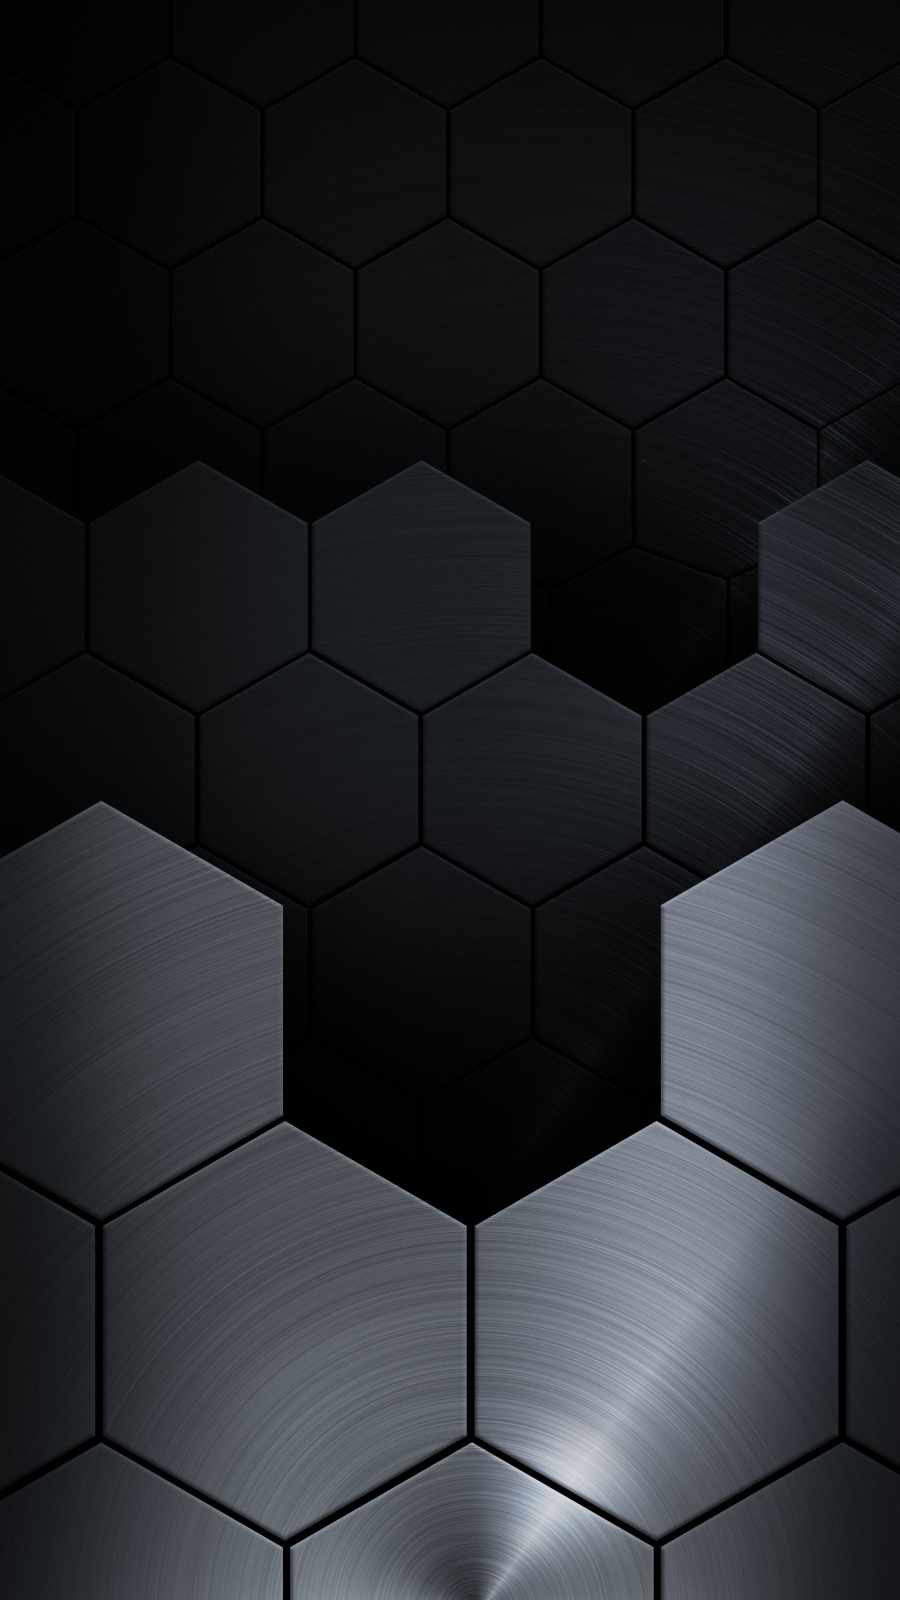 Metal Hexagon iPhone Wallpaper